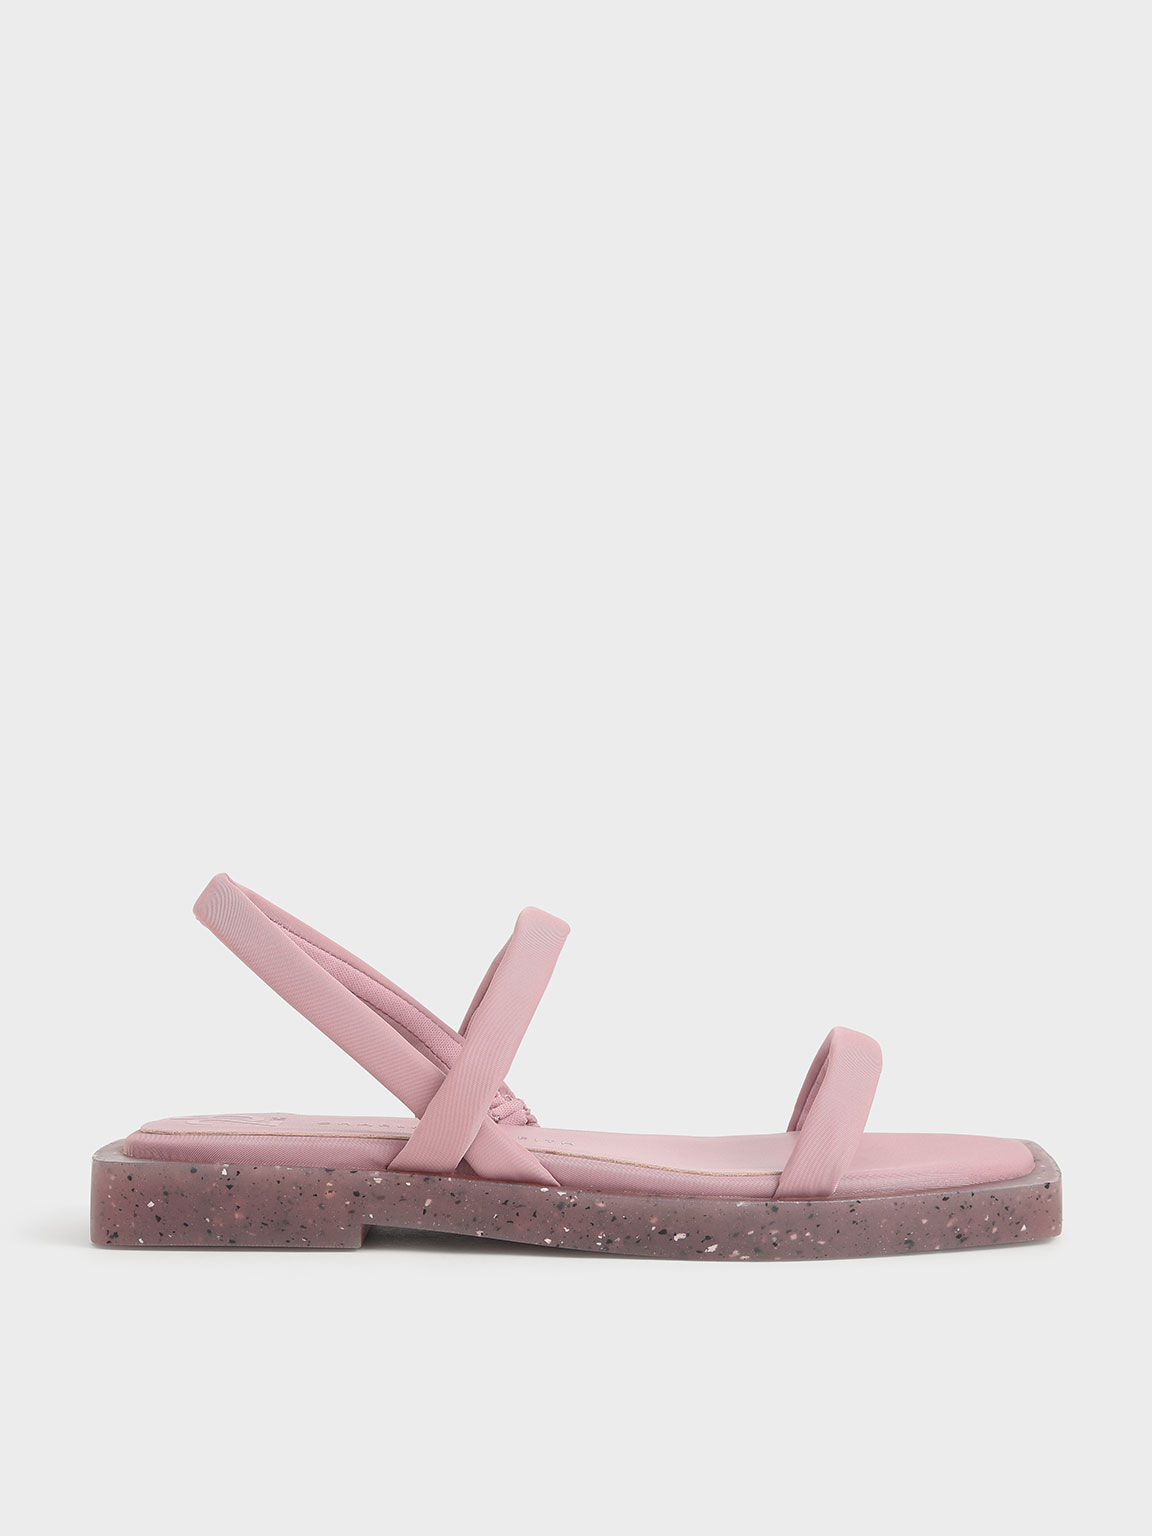 Arabella 尼龍一字涼鞋, 粉紅色, hi-res